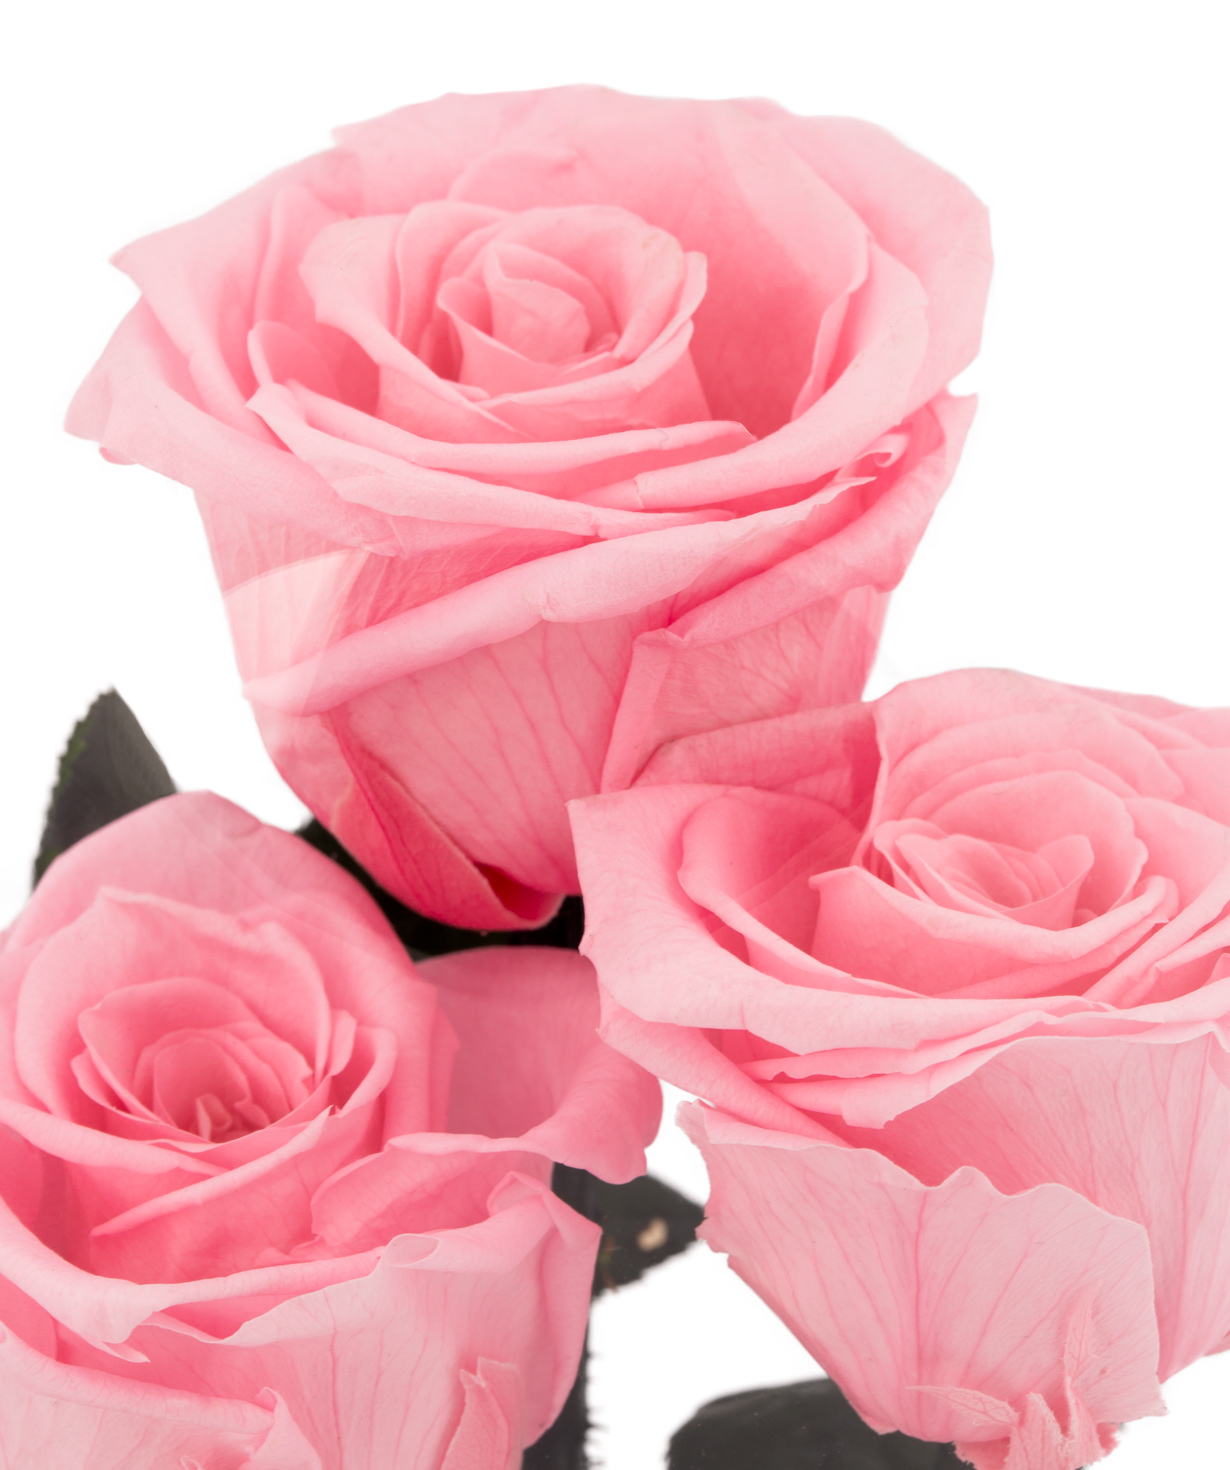 Композиция `EM Flowers` с вечными розами и гортензией розовая 28 см в колбе